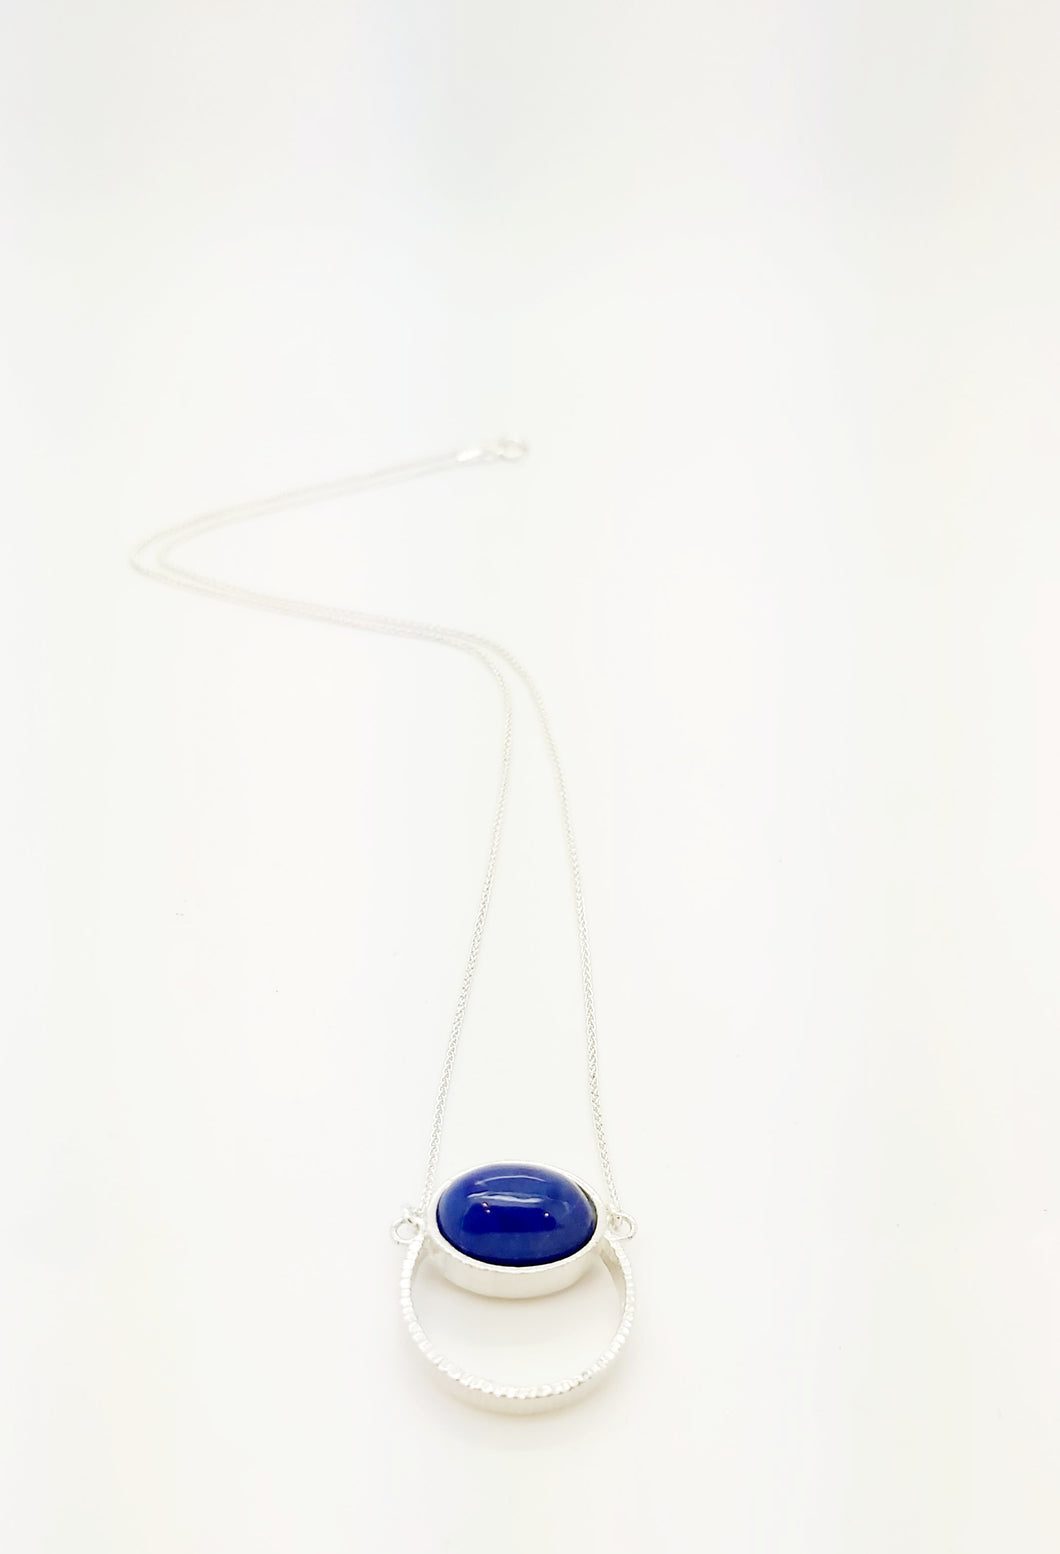 Pendentif sur Chaîne 18'' (45cm) en Argent 925 (Sterling) et Pierre Lapis Lazuli Inspiration Style Rétro  Design moderne épuré ajouré géométrique 